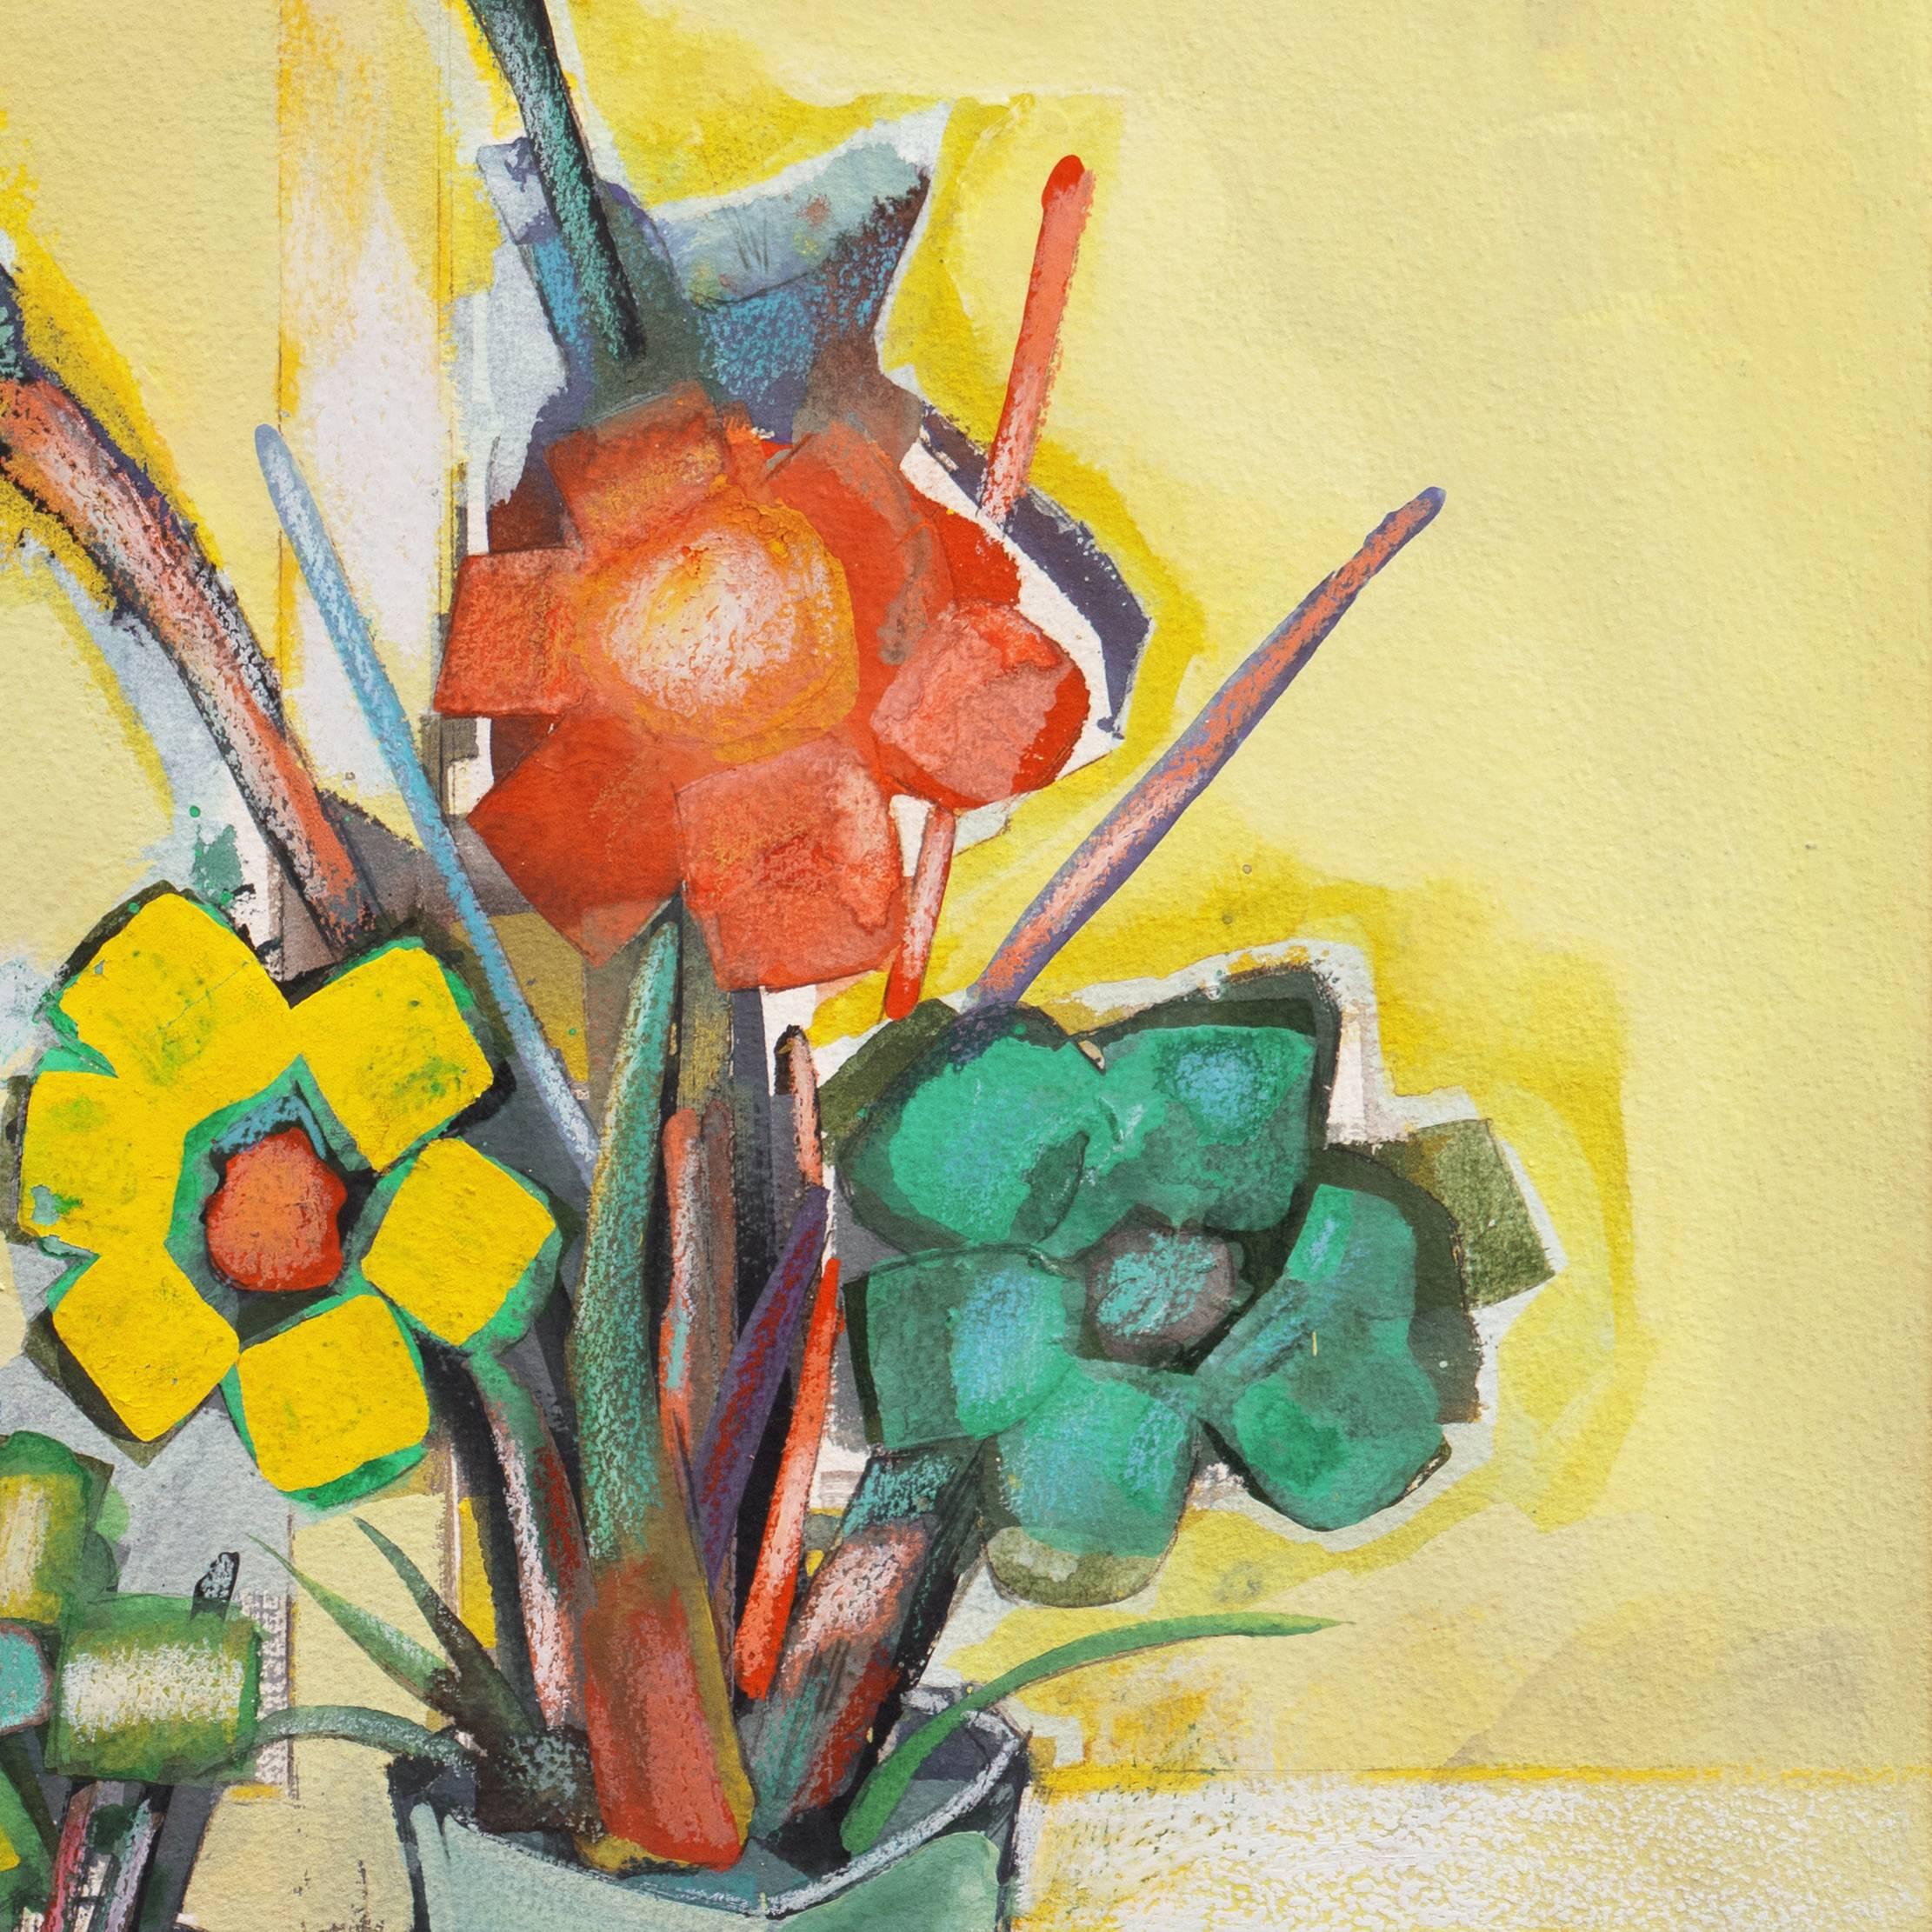  'Still Life of Flowers', Post Impressionist, Paris Salon, Ecole des Beaux Arts 2